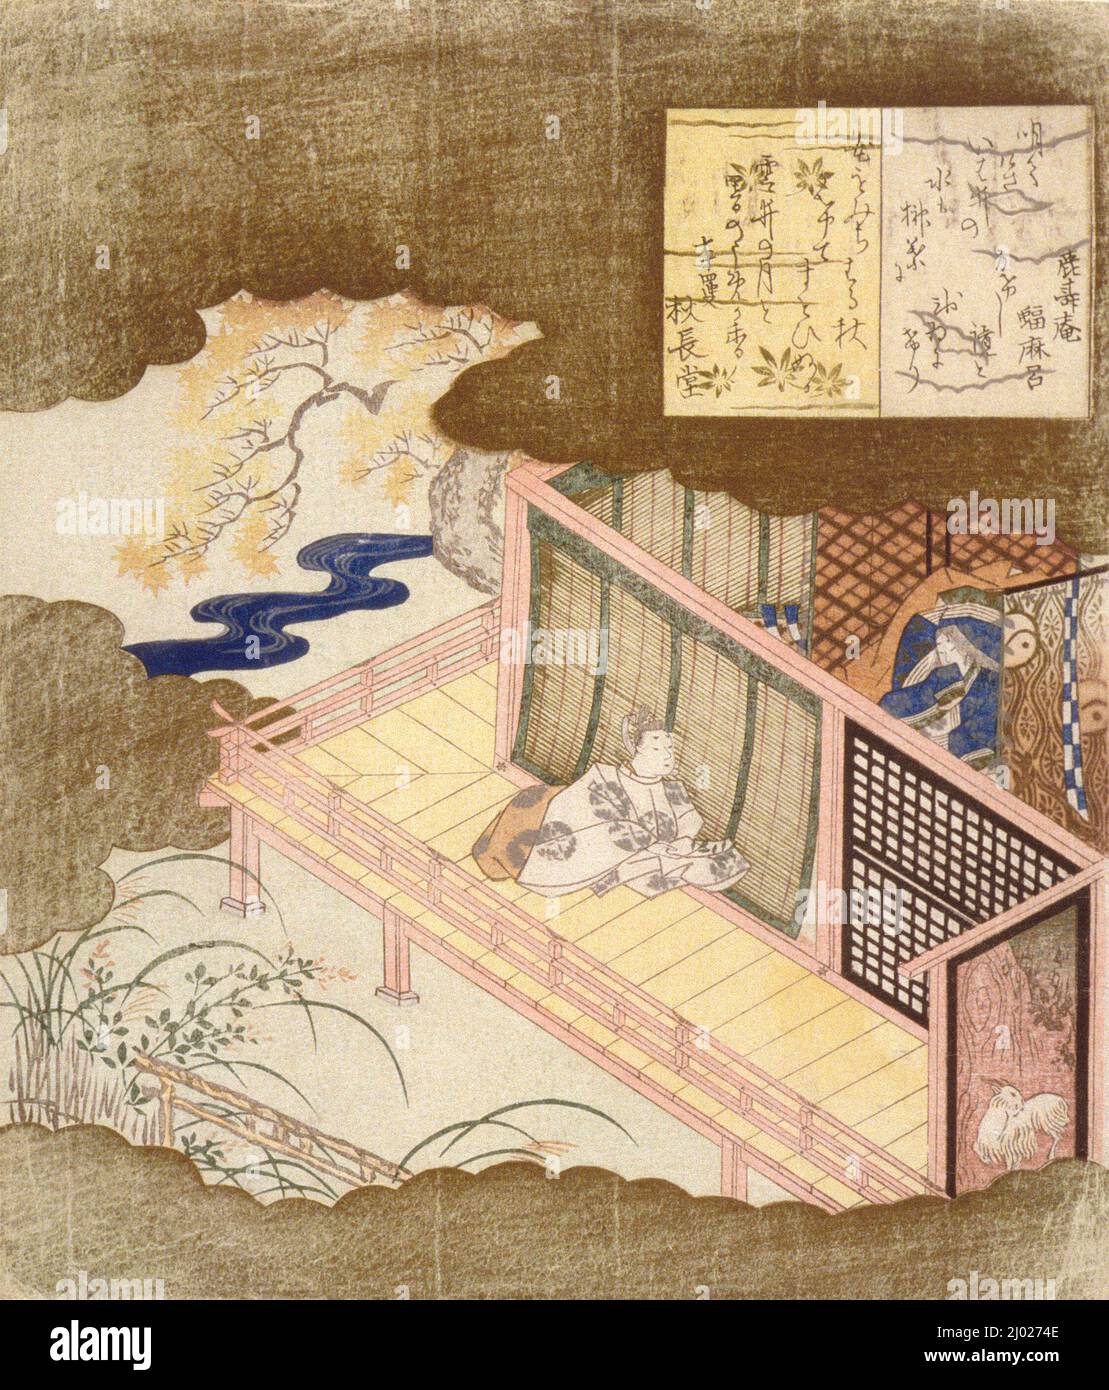 Les amateurs de court échangeant des poèmes. Kubo Shunman (Japon, Tokyo, 1757-1820). Japon, vers 1811. Imprimés; blocs de bois. Imprimé color block et suribono Banque D'Images